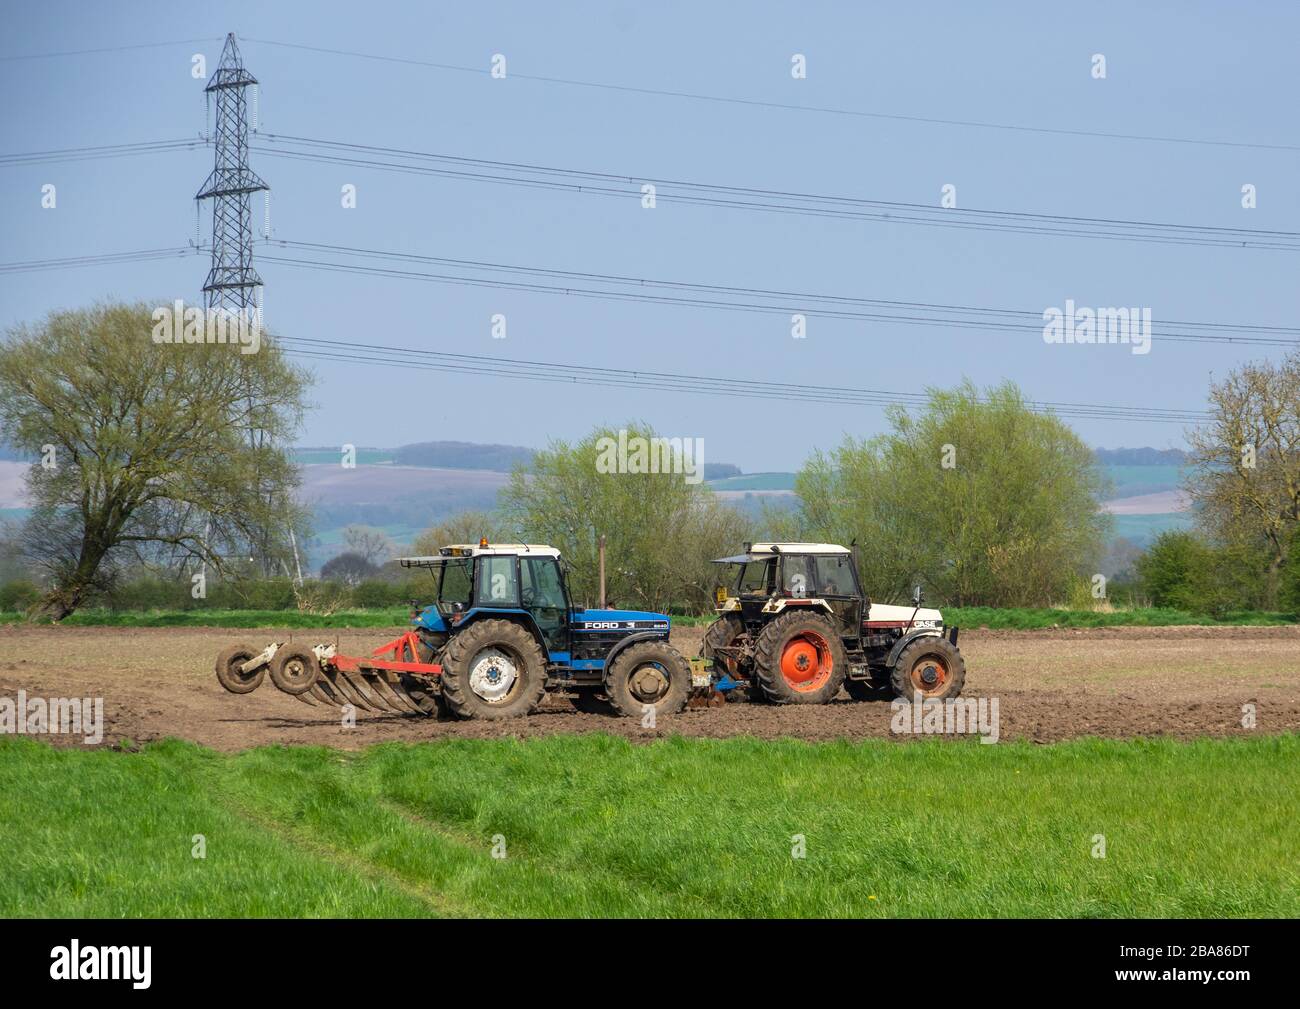 Beilby, East Yorkshire, 21.04.2018 - EIN blauer Ford-Traktor und ein weißer CASE-Traktor pflügen zusammen ein Fiel. Stockfoto